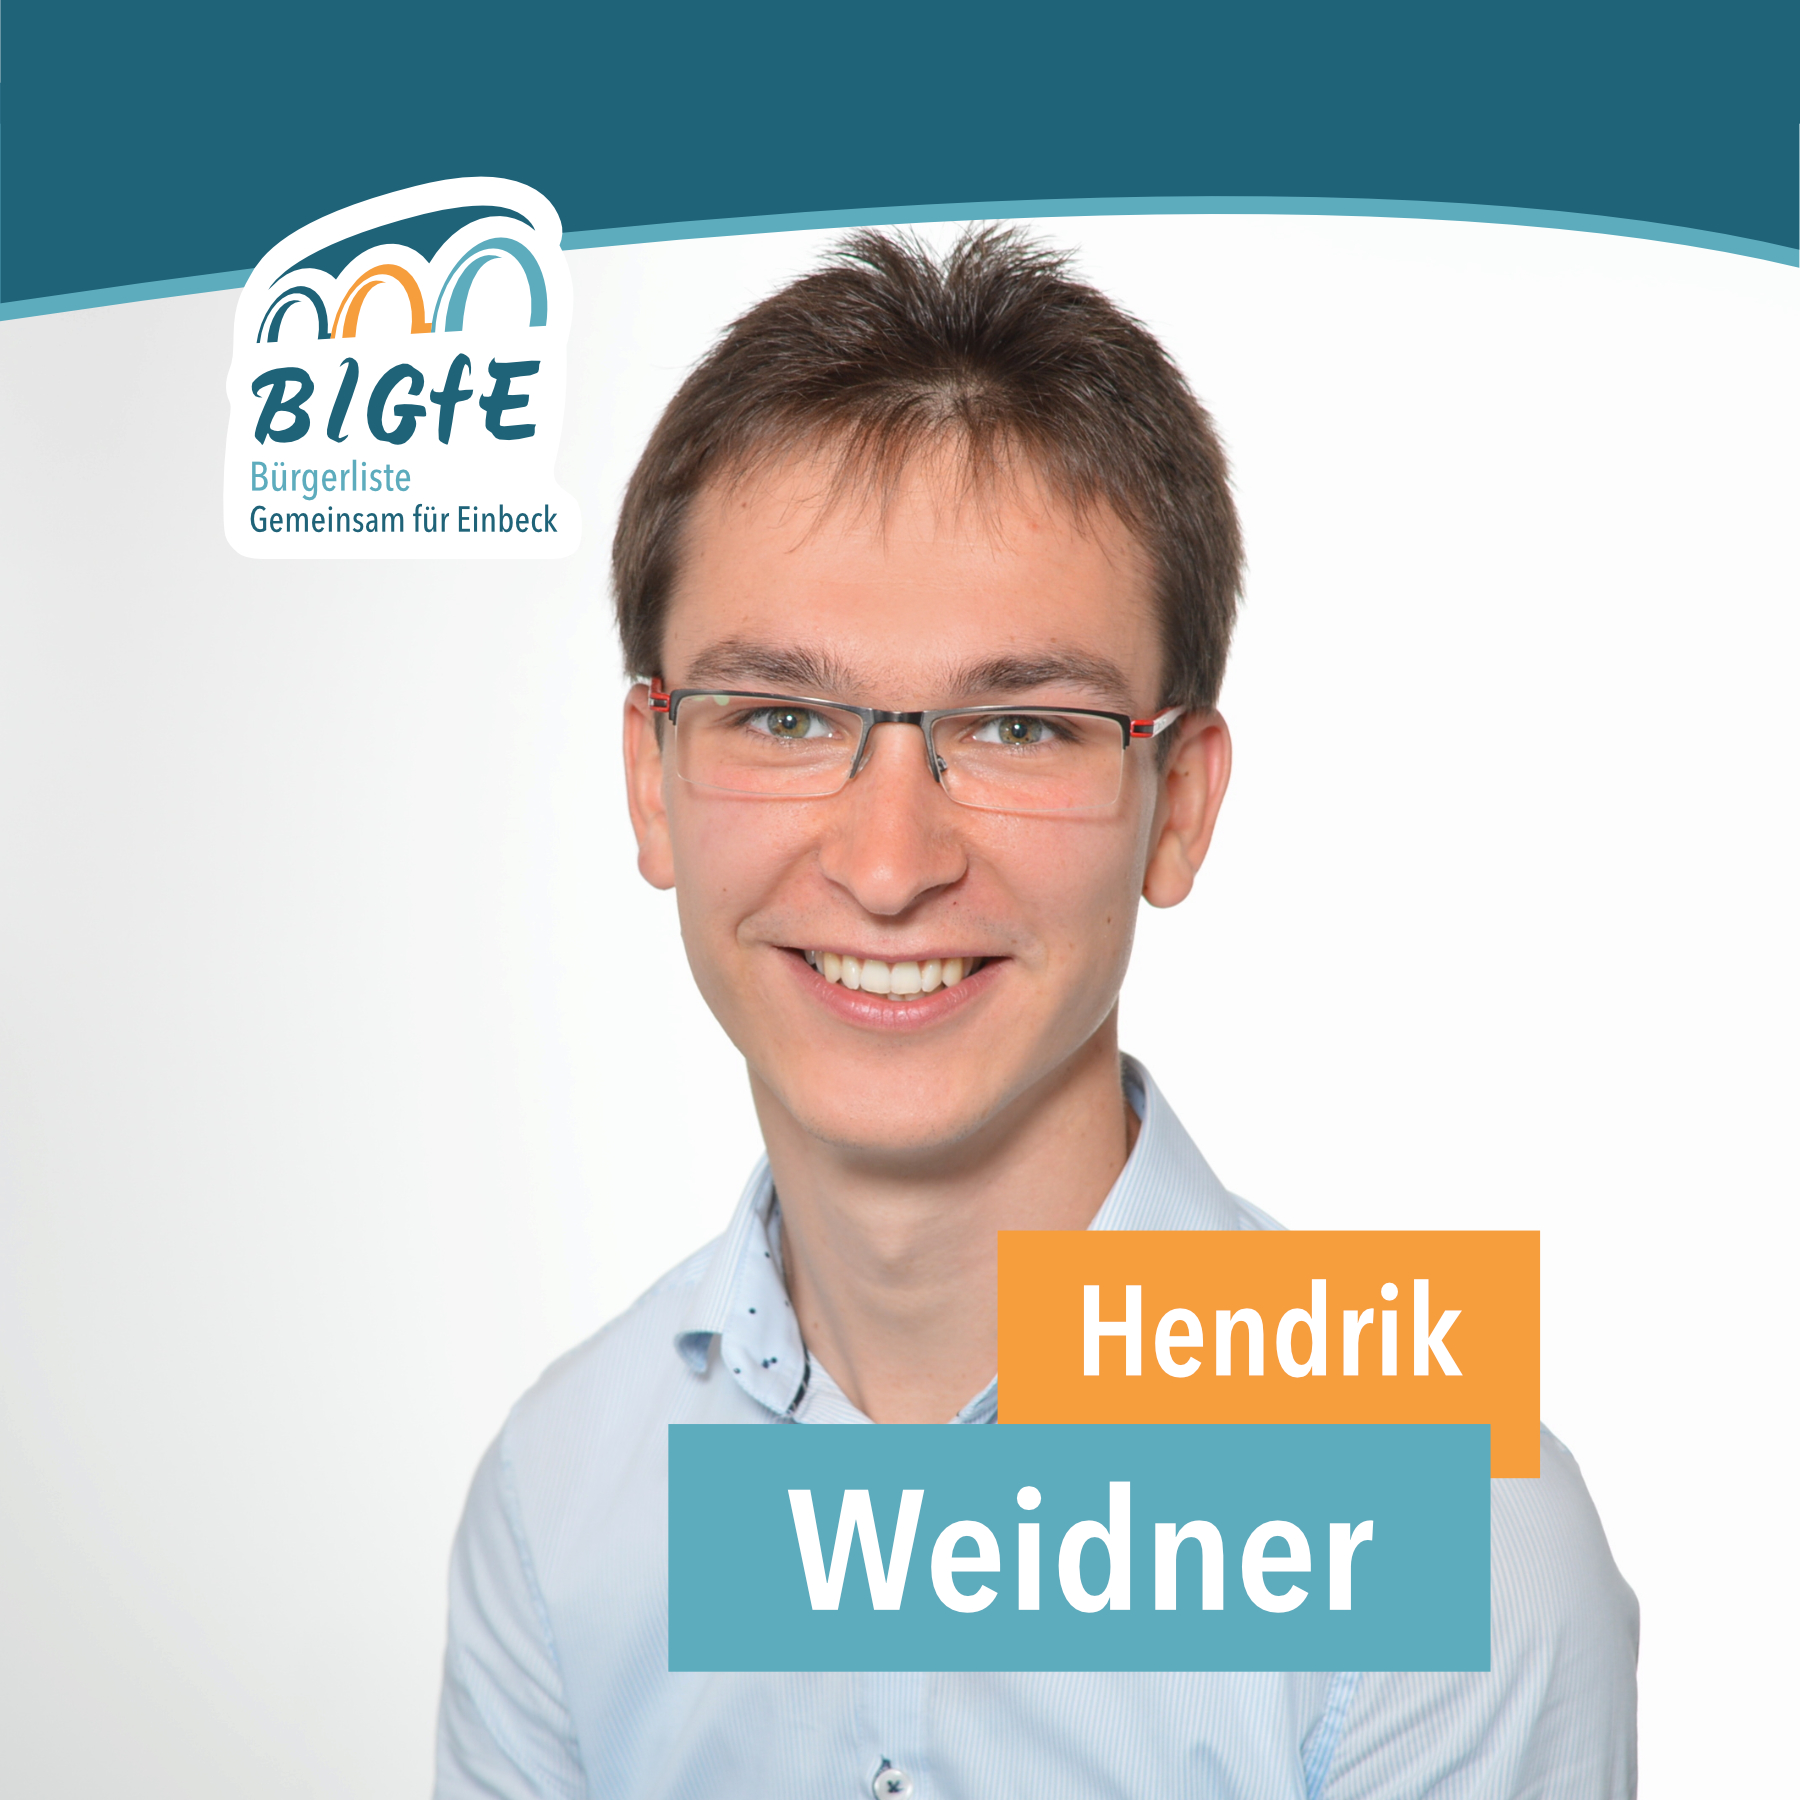 Hendrik Weidner